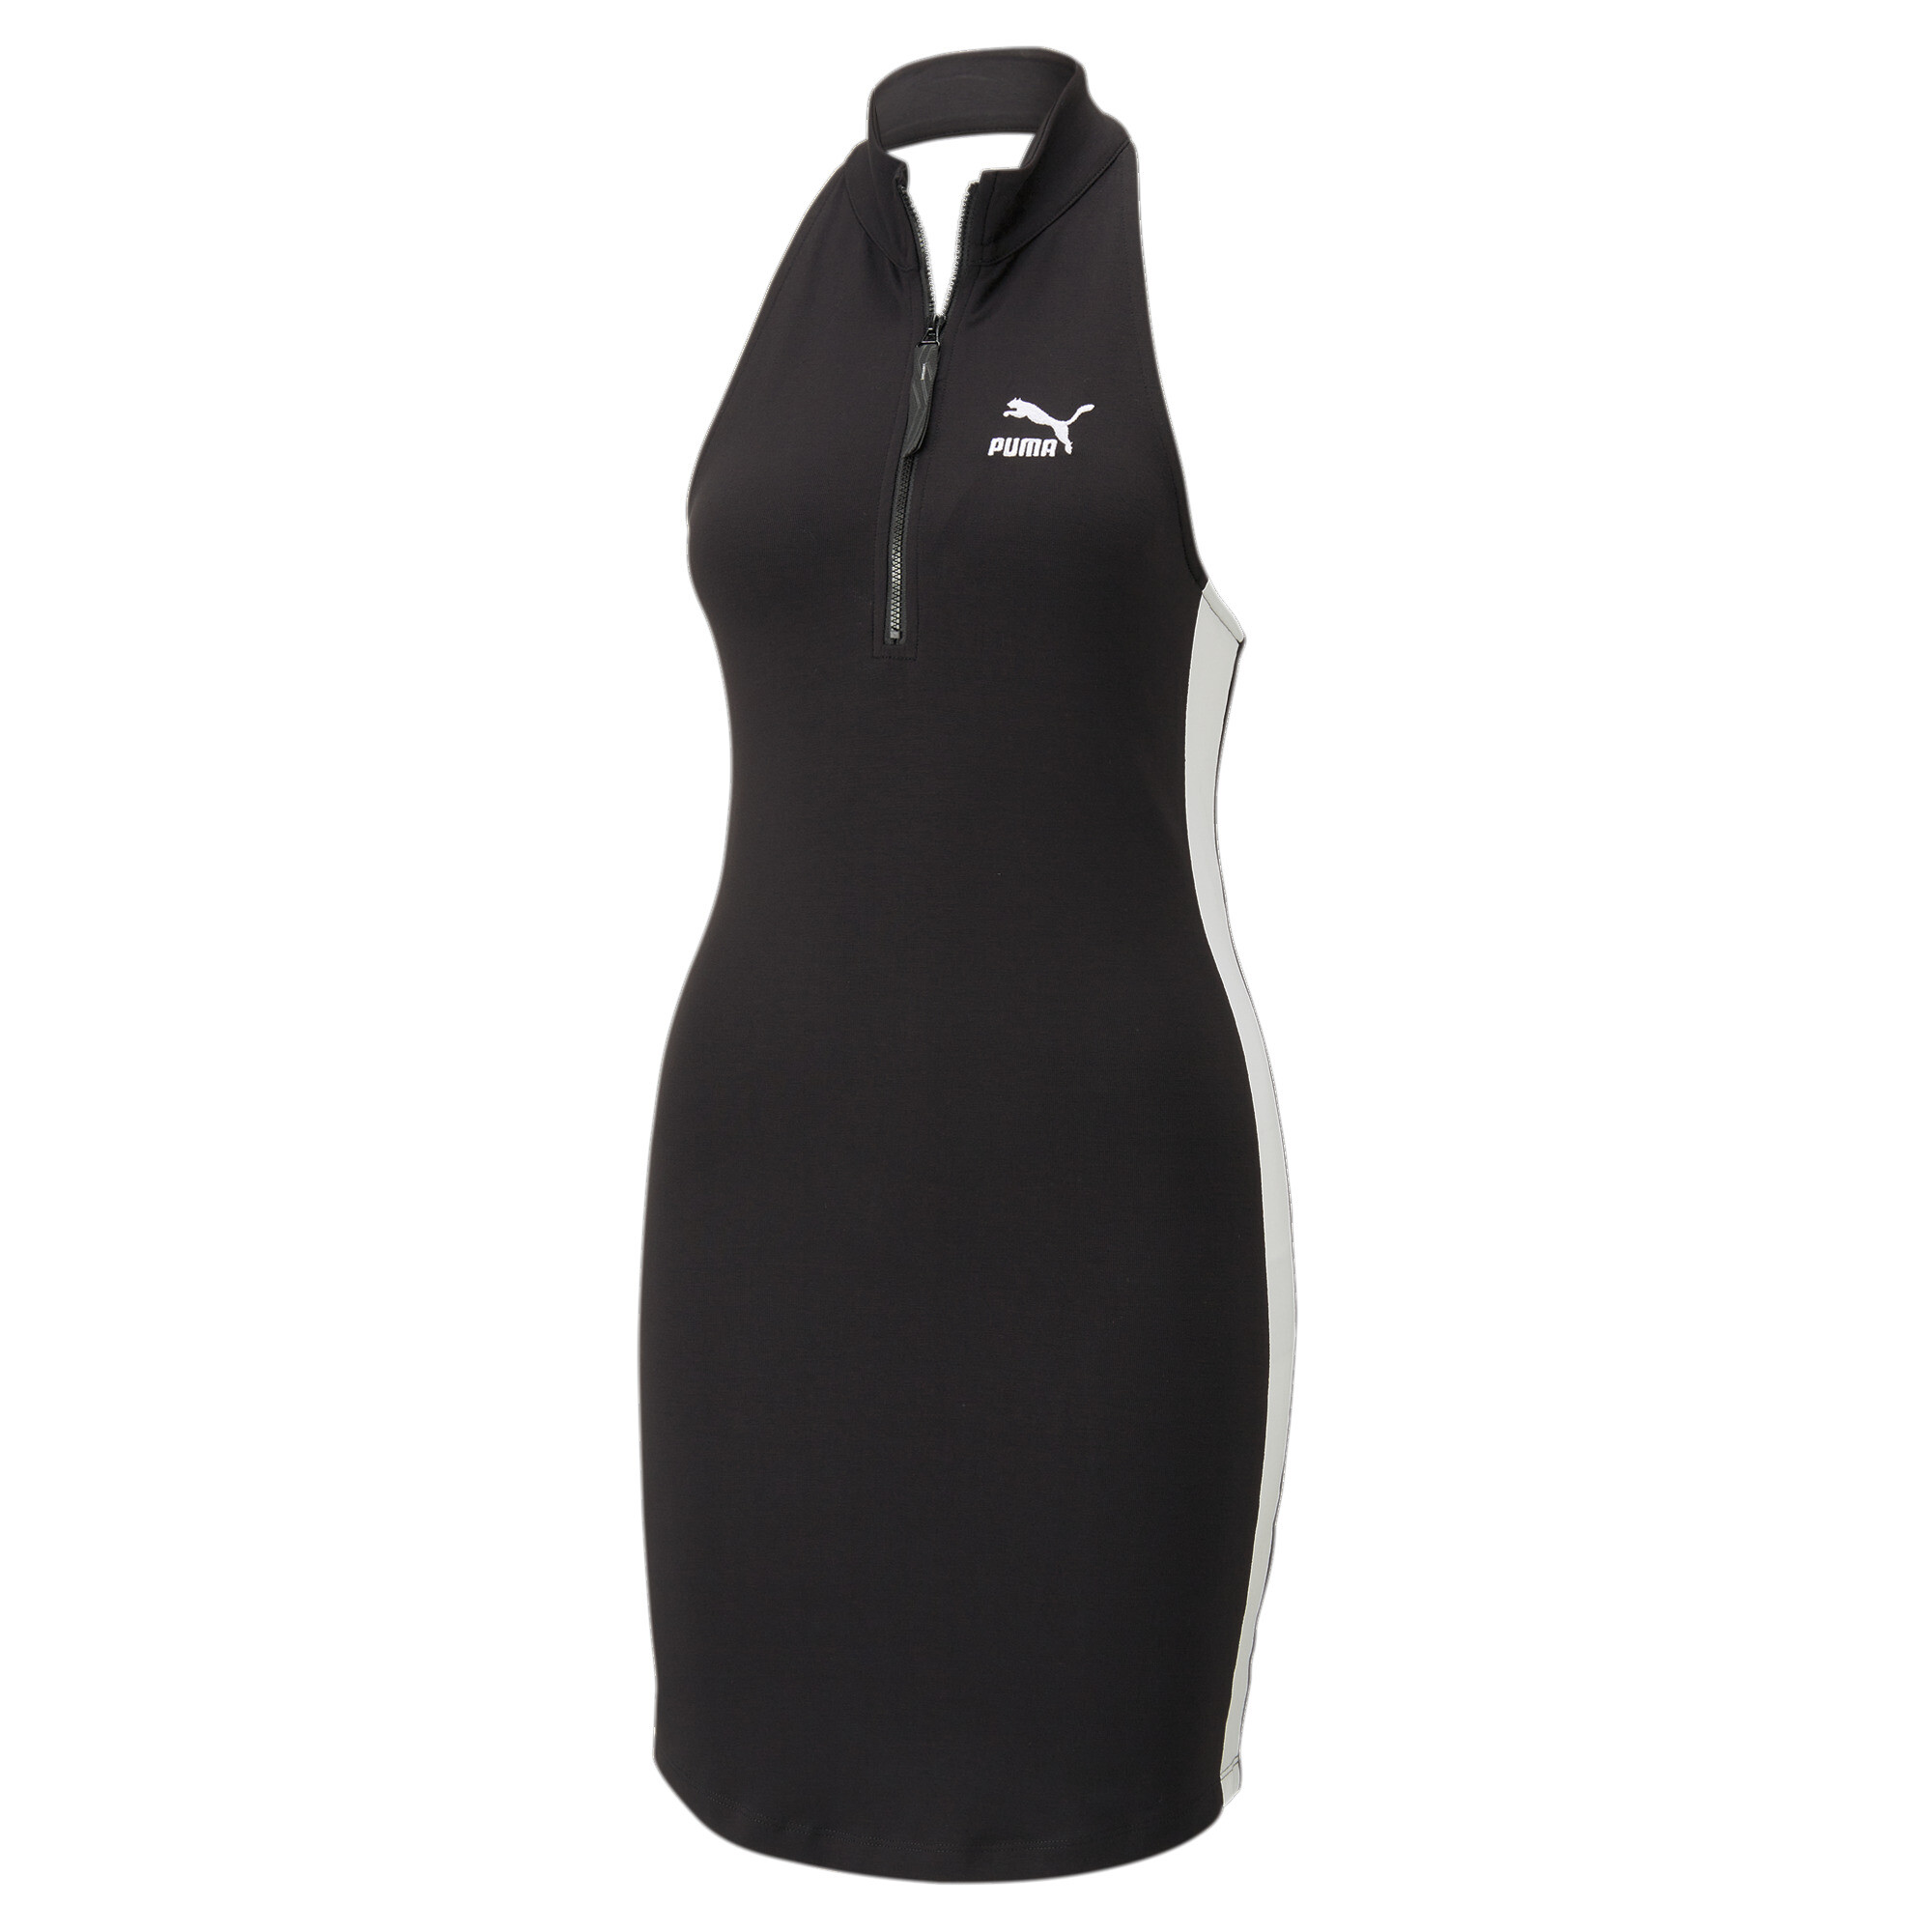 Women's PUMA T7 Half-Zip Mock Neck Dress Women In Black, Size Large